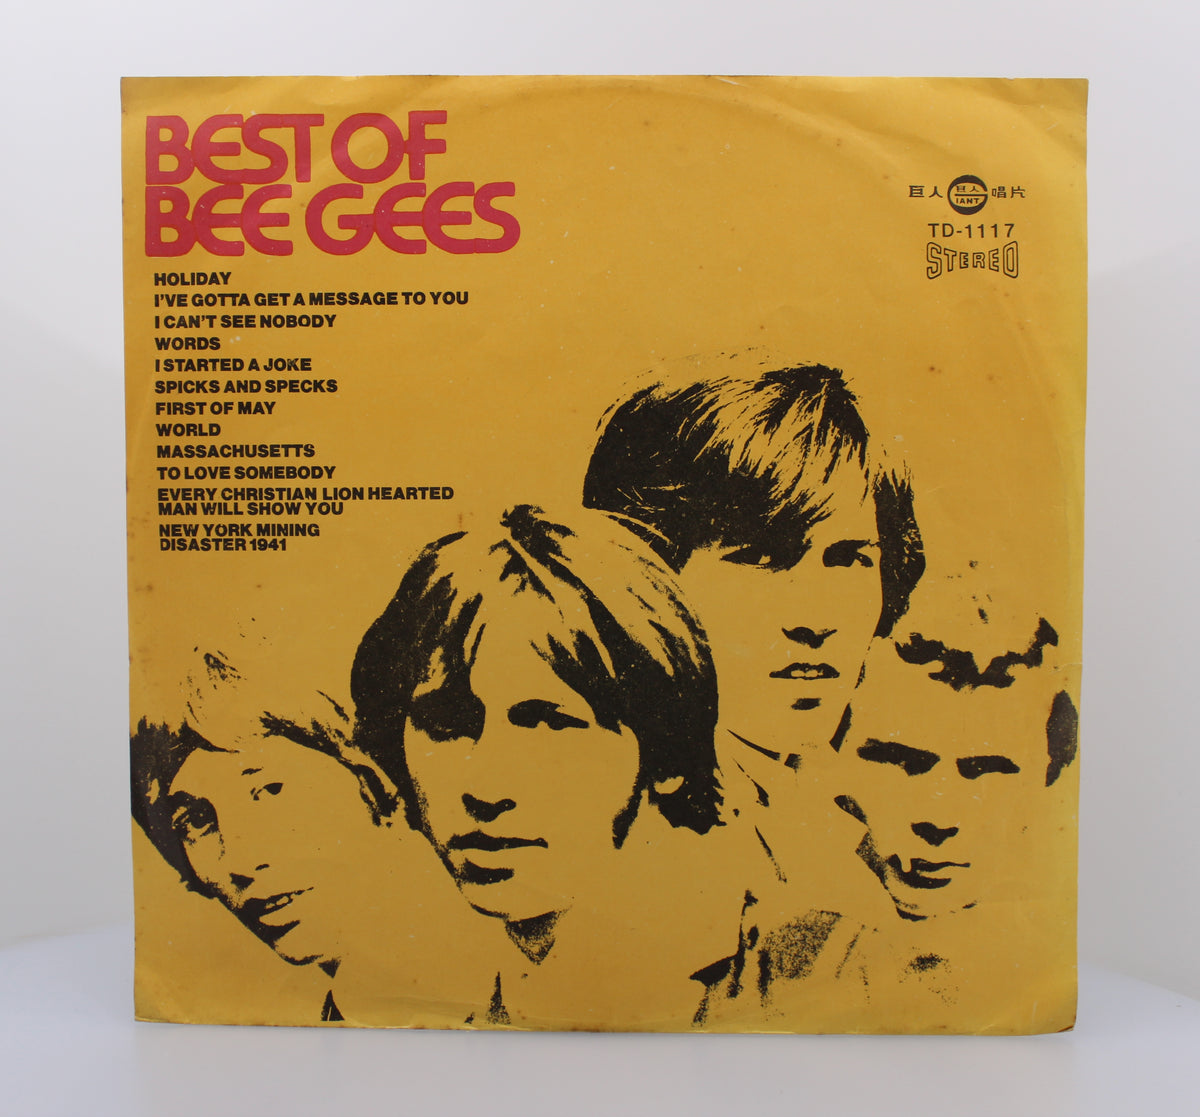 Bee Gees - Best Of, Vinyl LP (33⅓ rpm), Taiwan